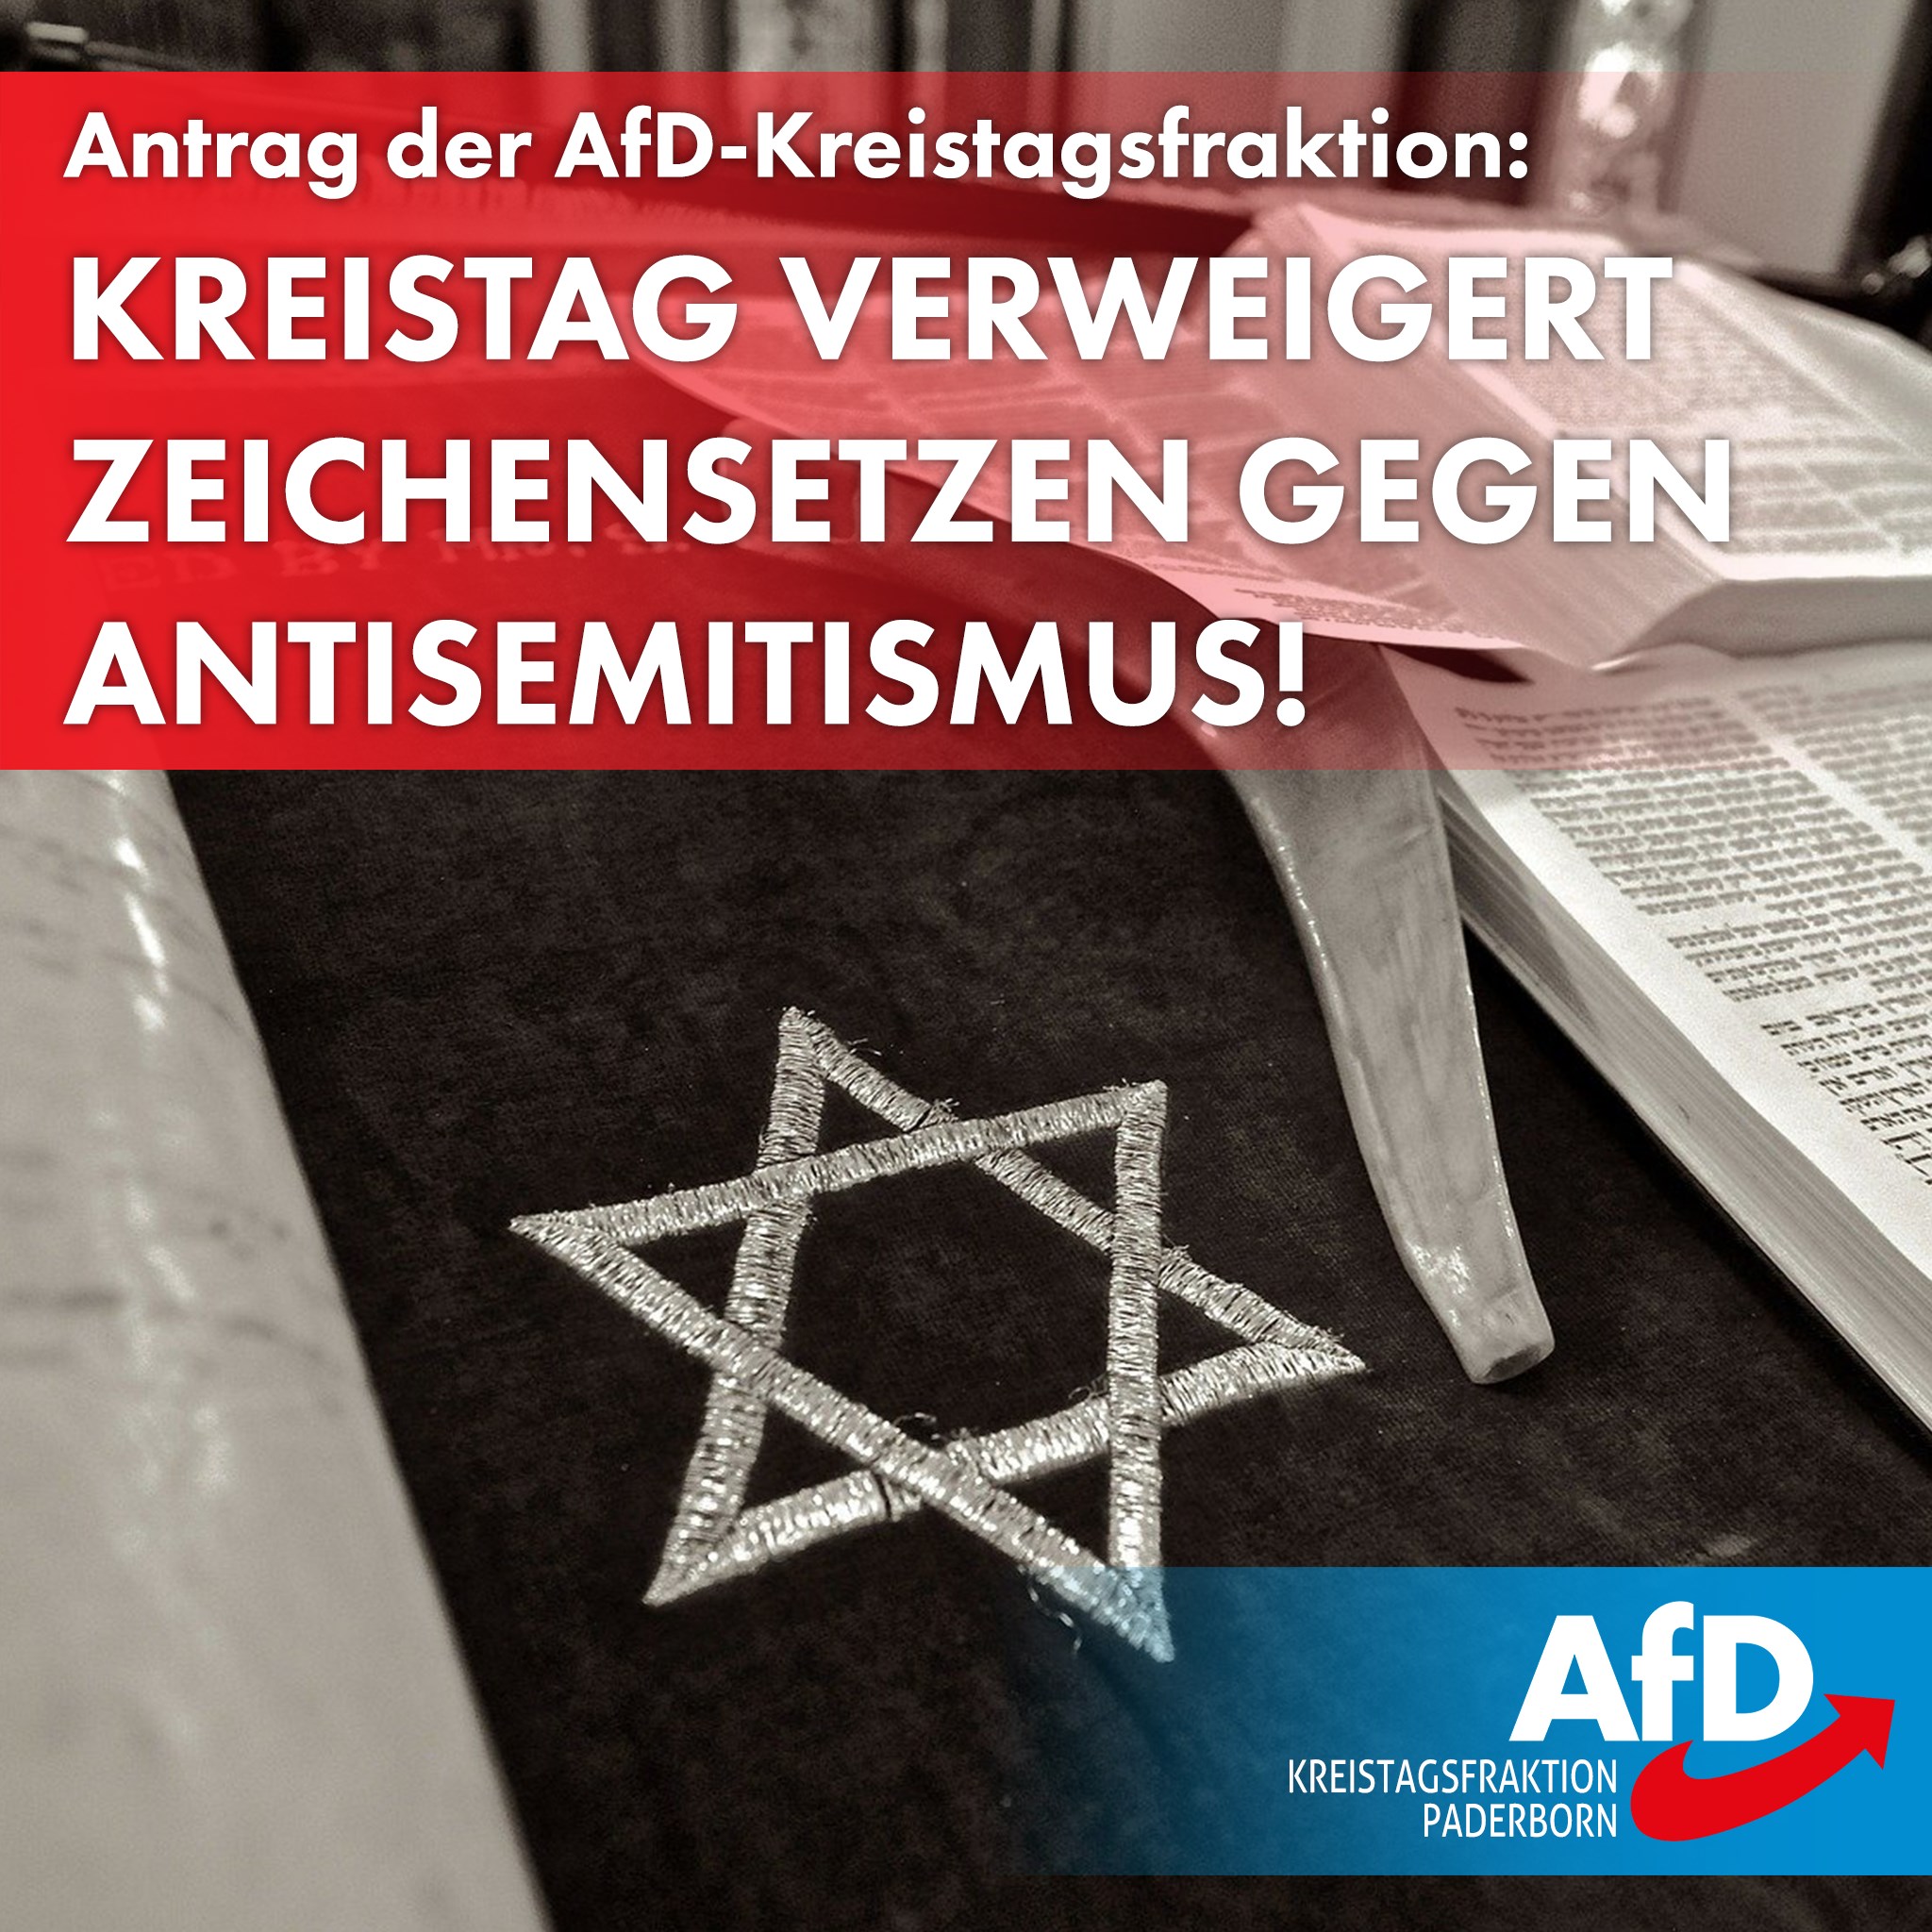 You are currently viewing Kreistag verweigert Zeichensetzen gegen Antisemitismus